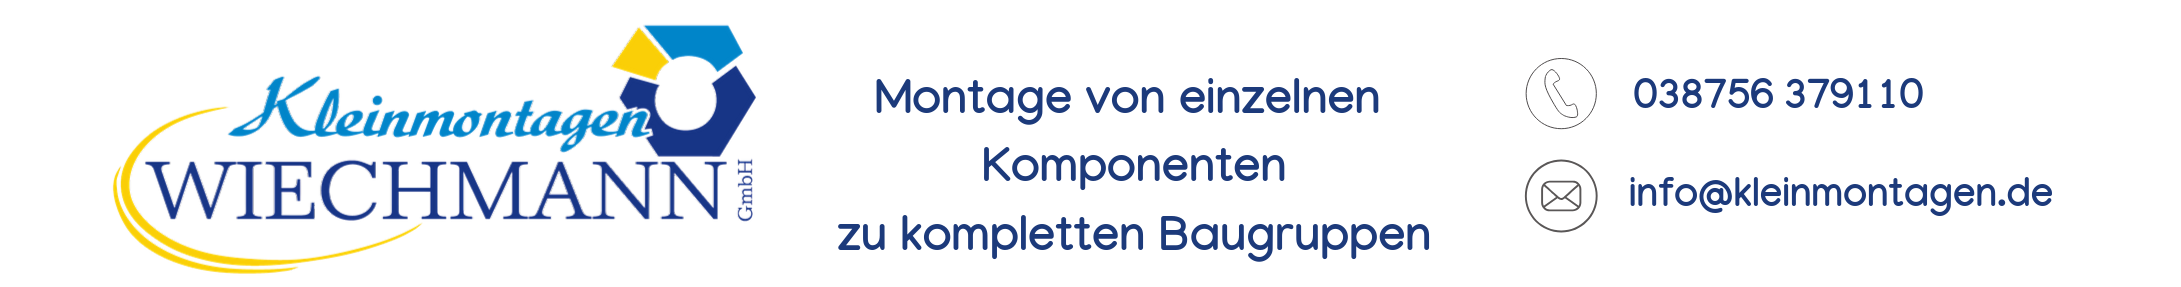 Kleinmontagen WIECHMANN GmbH in Grabow Logo